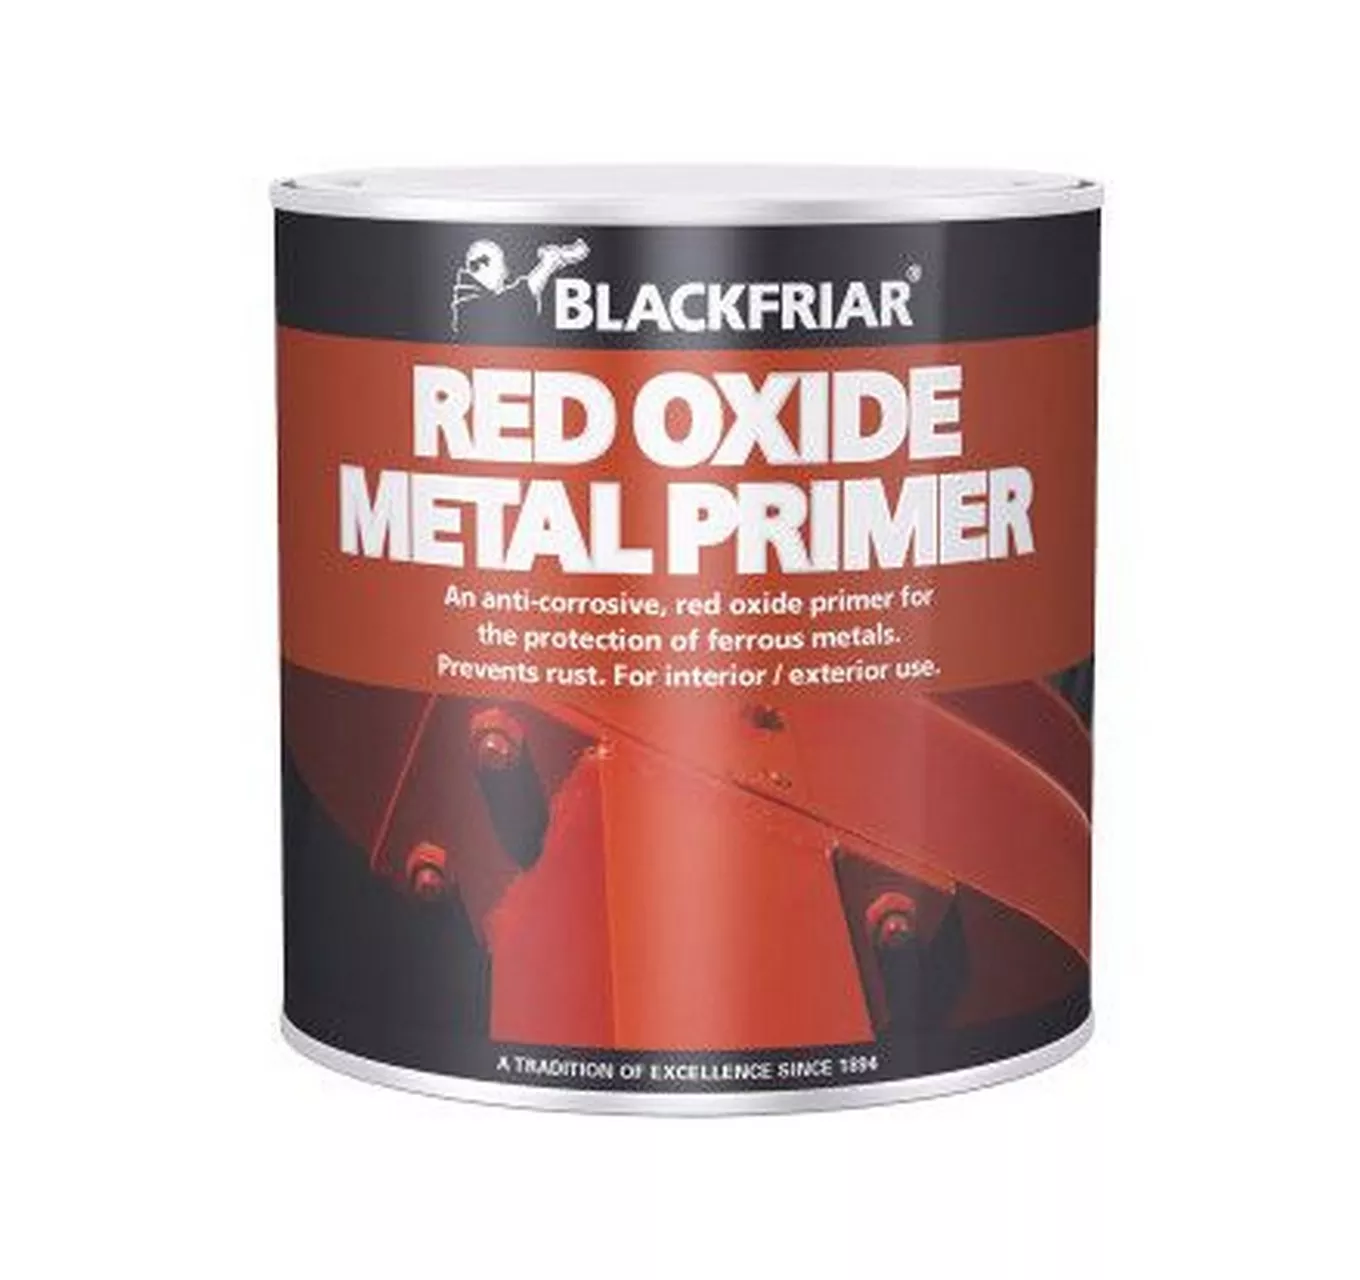 Red Oxide Metal Primer 500ml